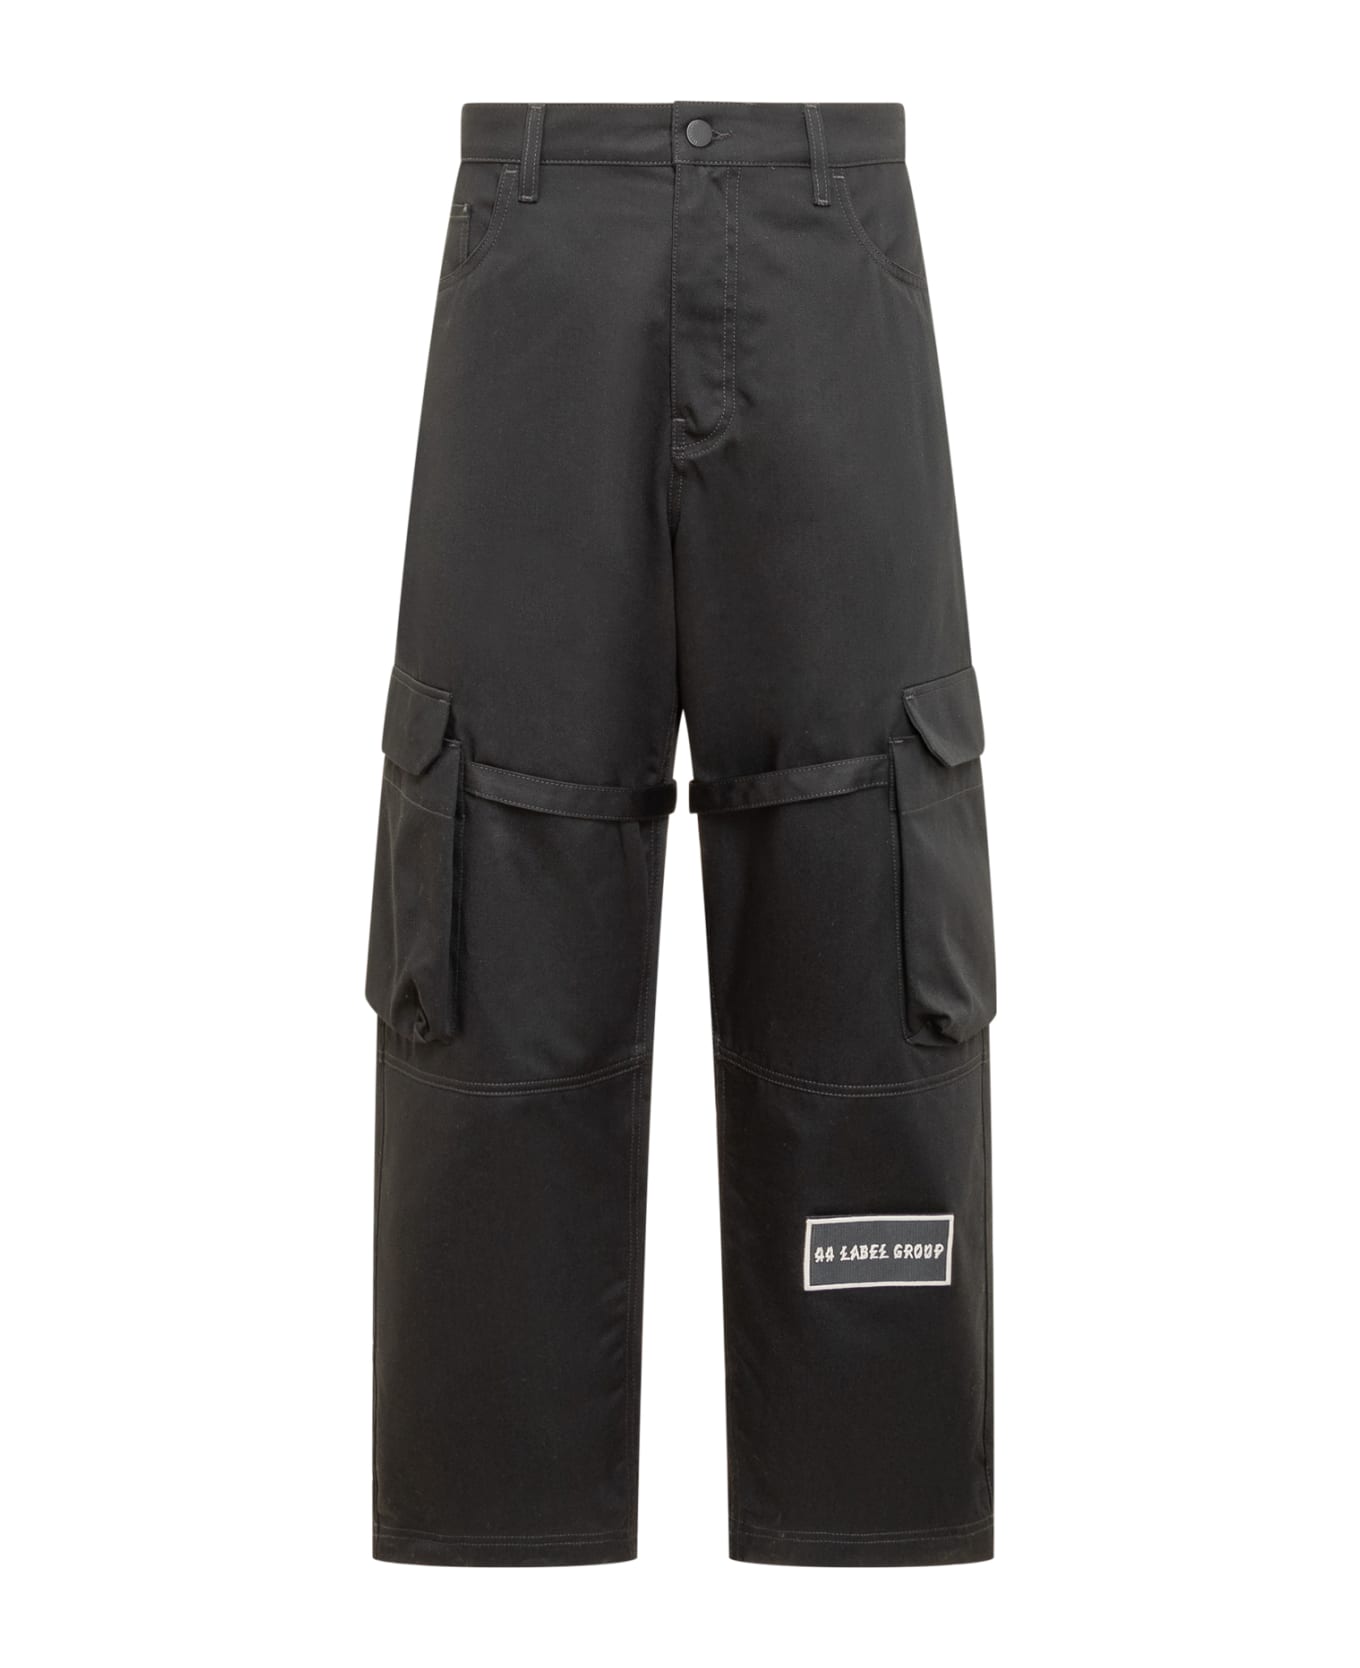 44 Label Group Cargo Pants Pants - BLACK